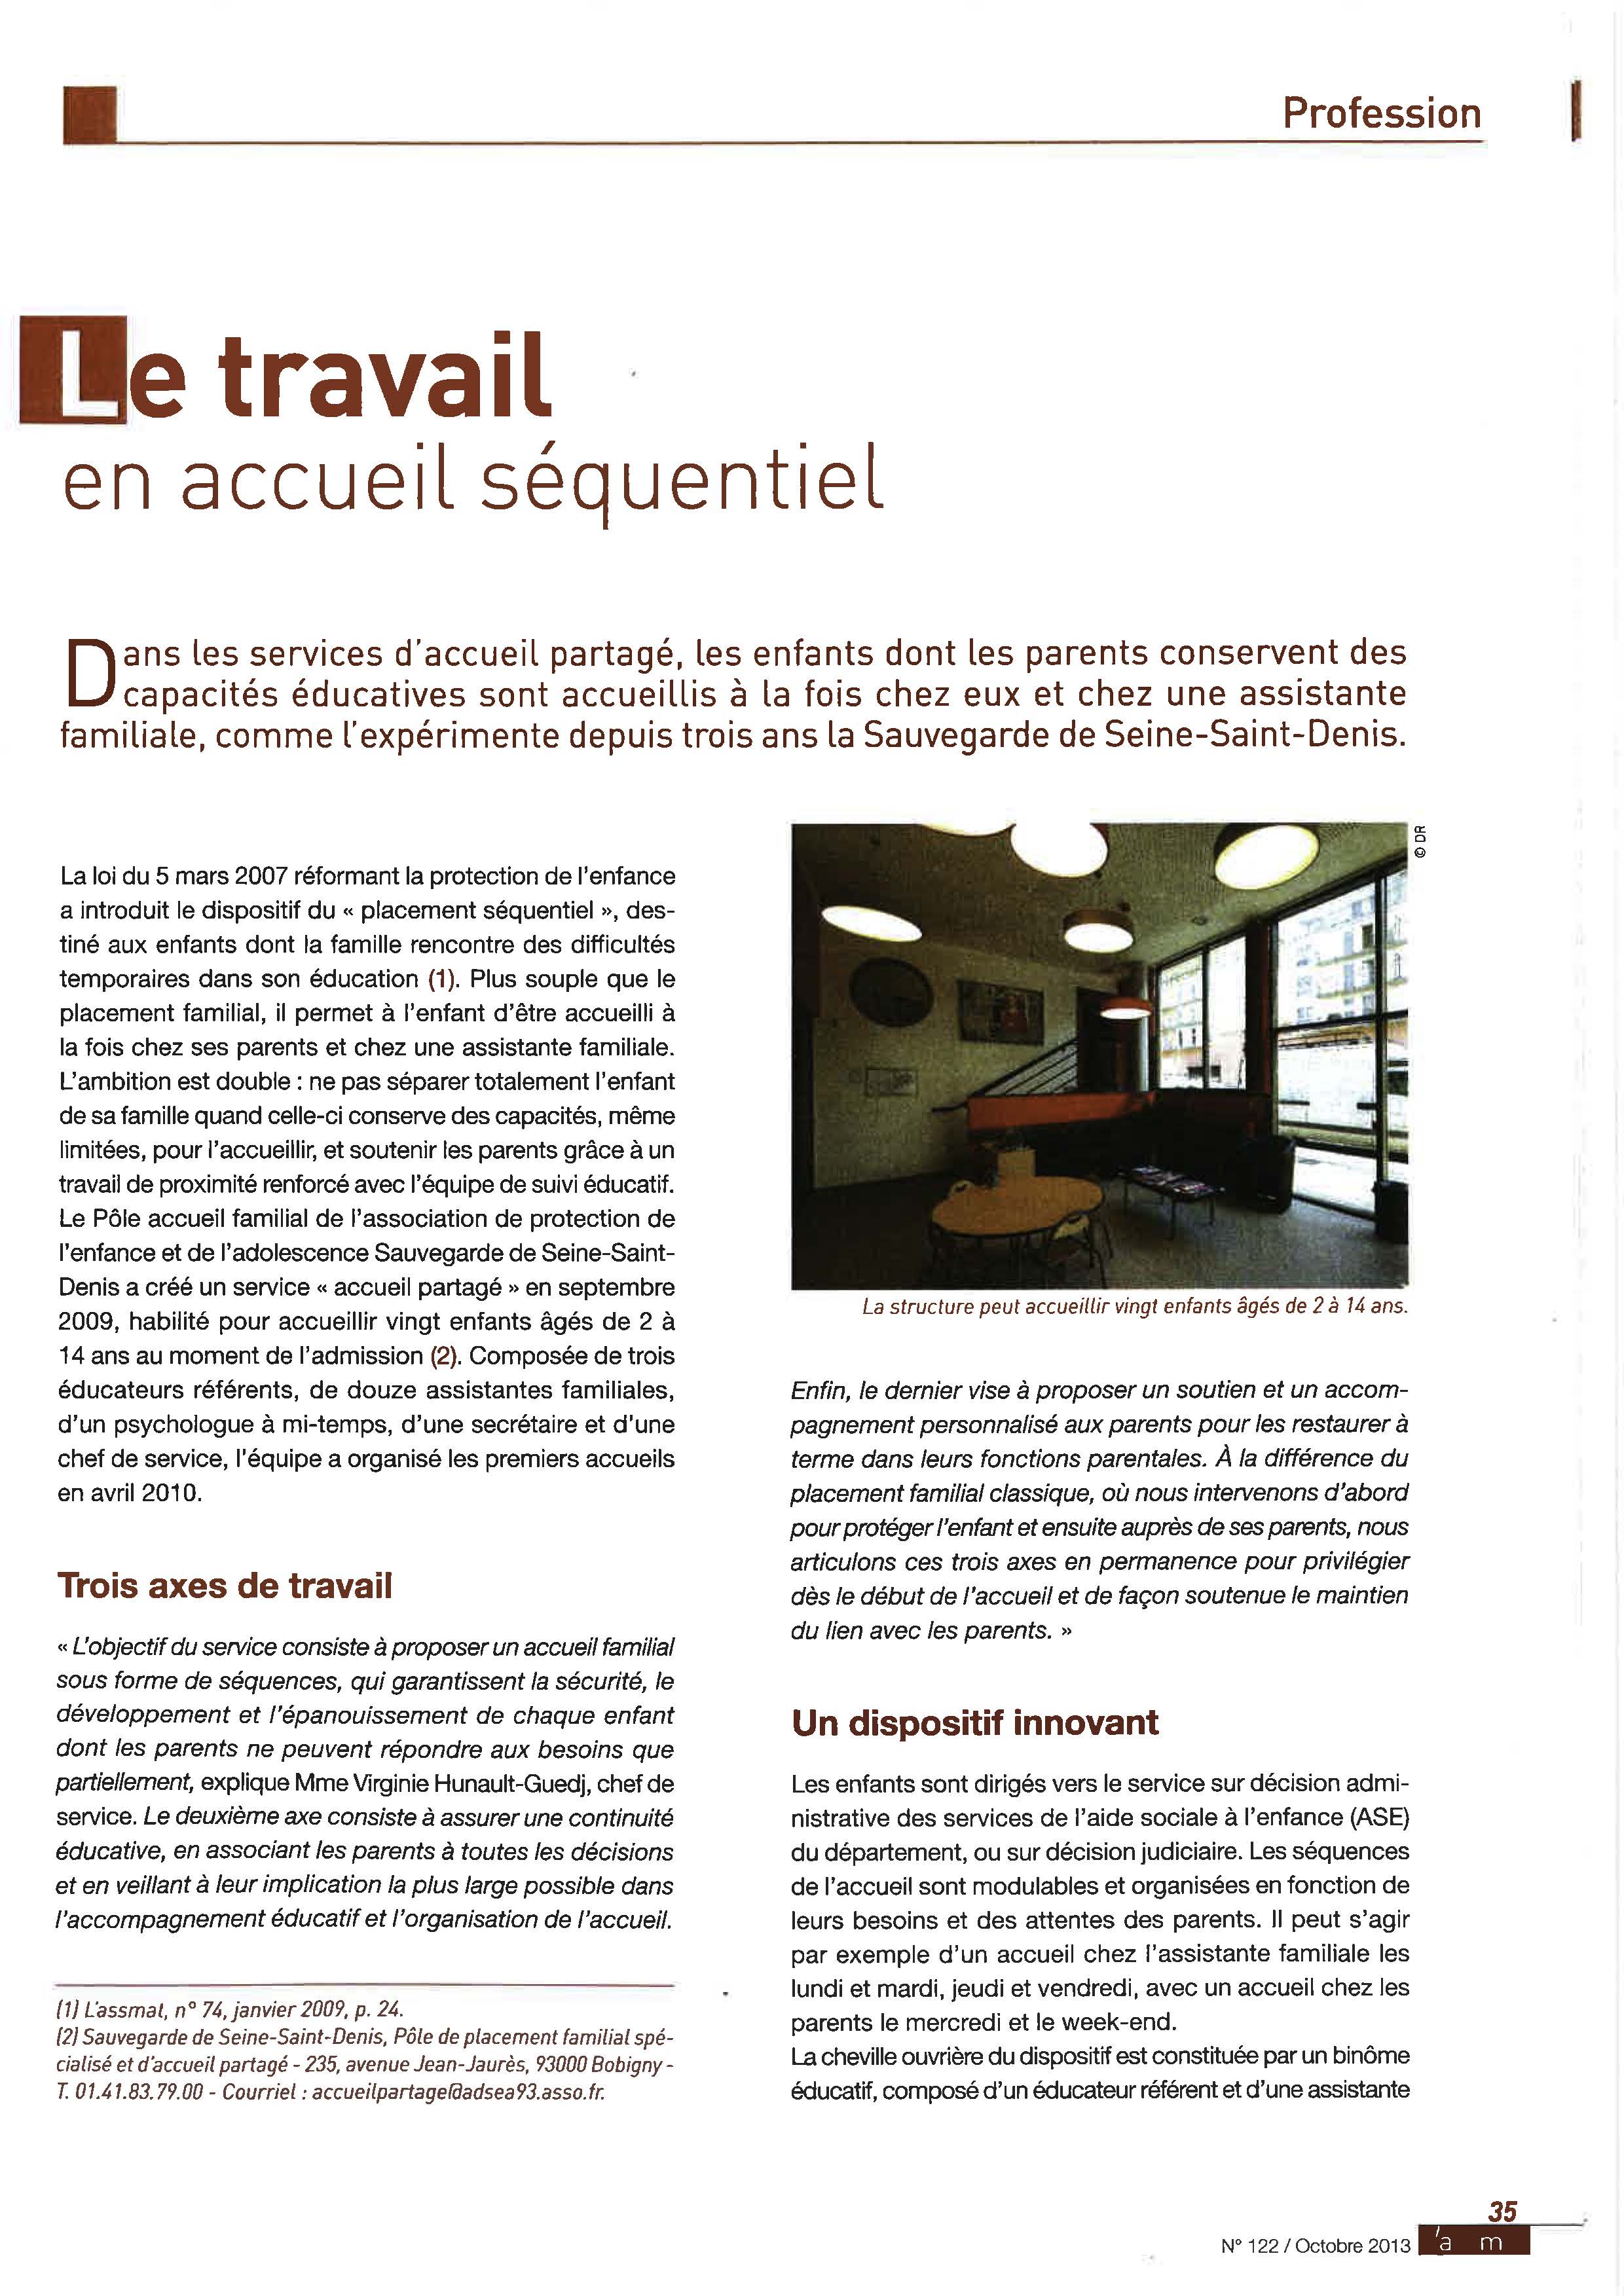 38 - Accueil séquentiel Page 1 - magazine ASSMAT - Oct 2013